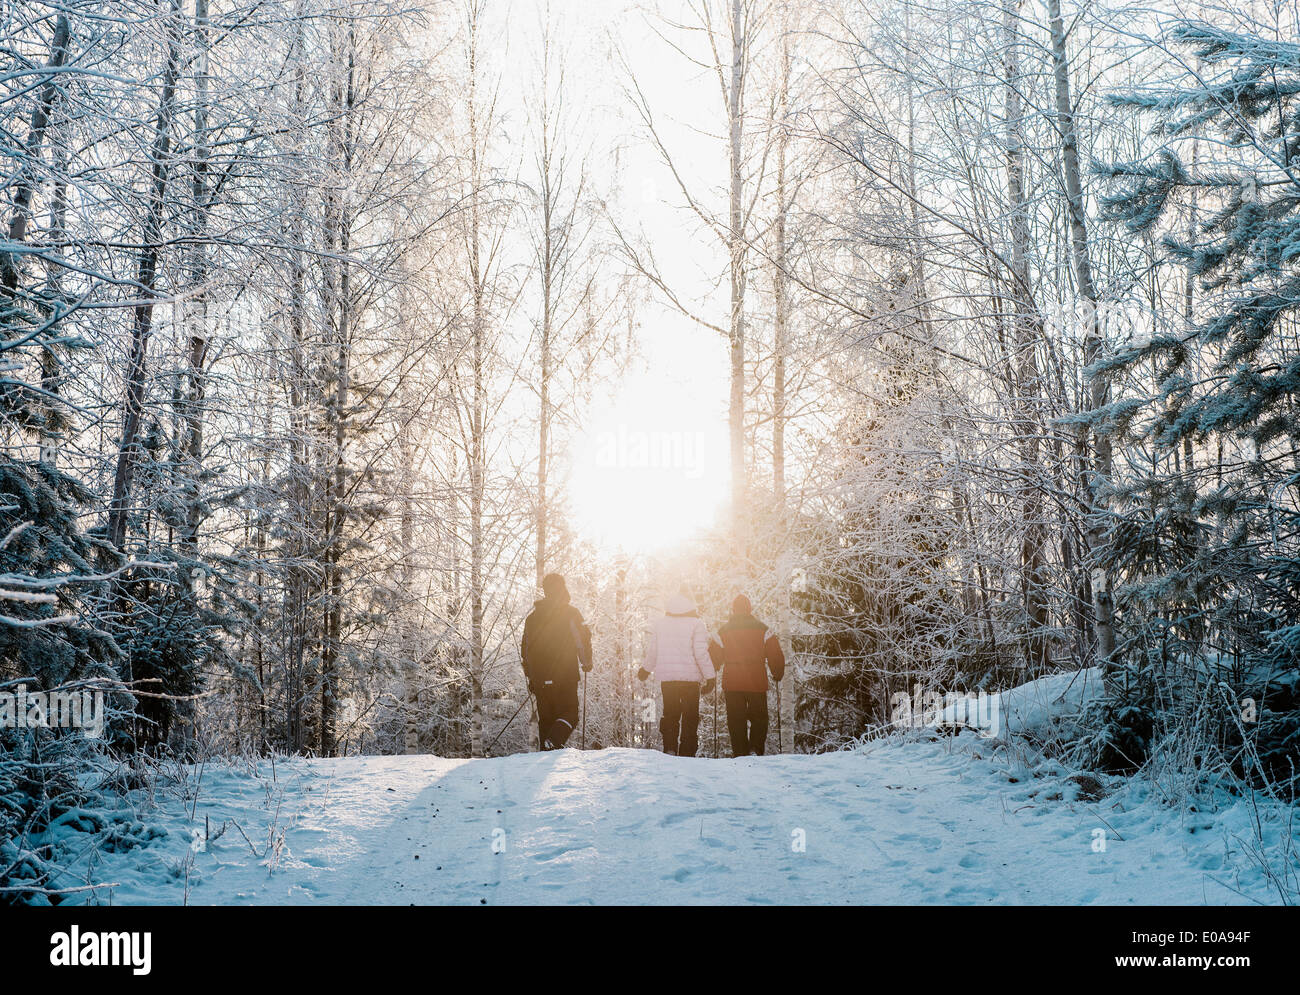 Drei Menschen nordic walking im Schnee bedeckt Wald Stockfoto